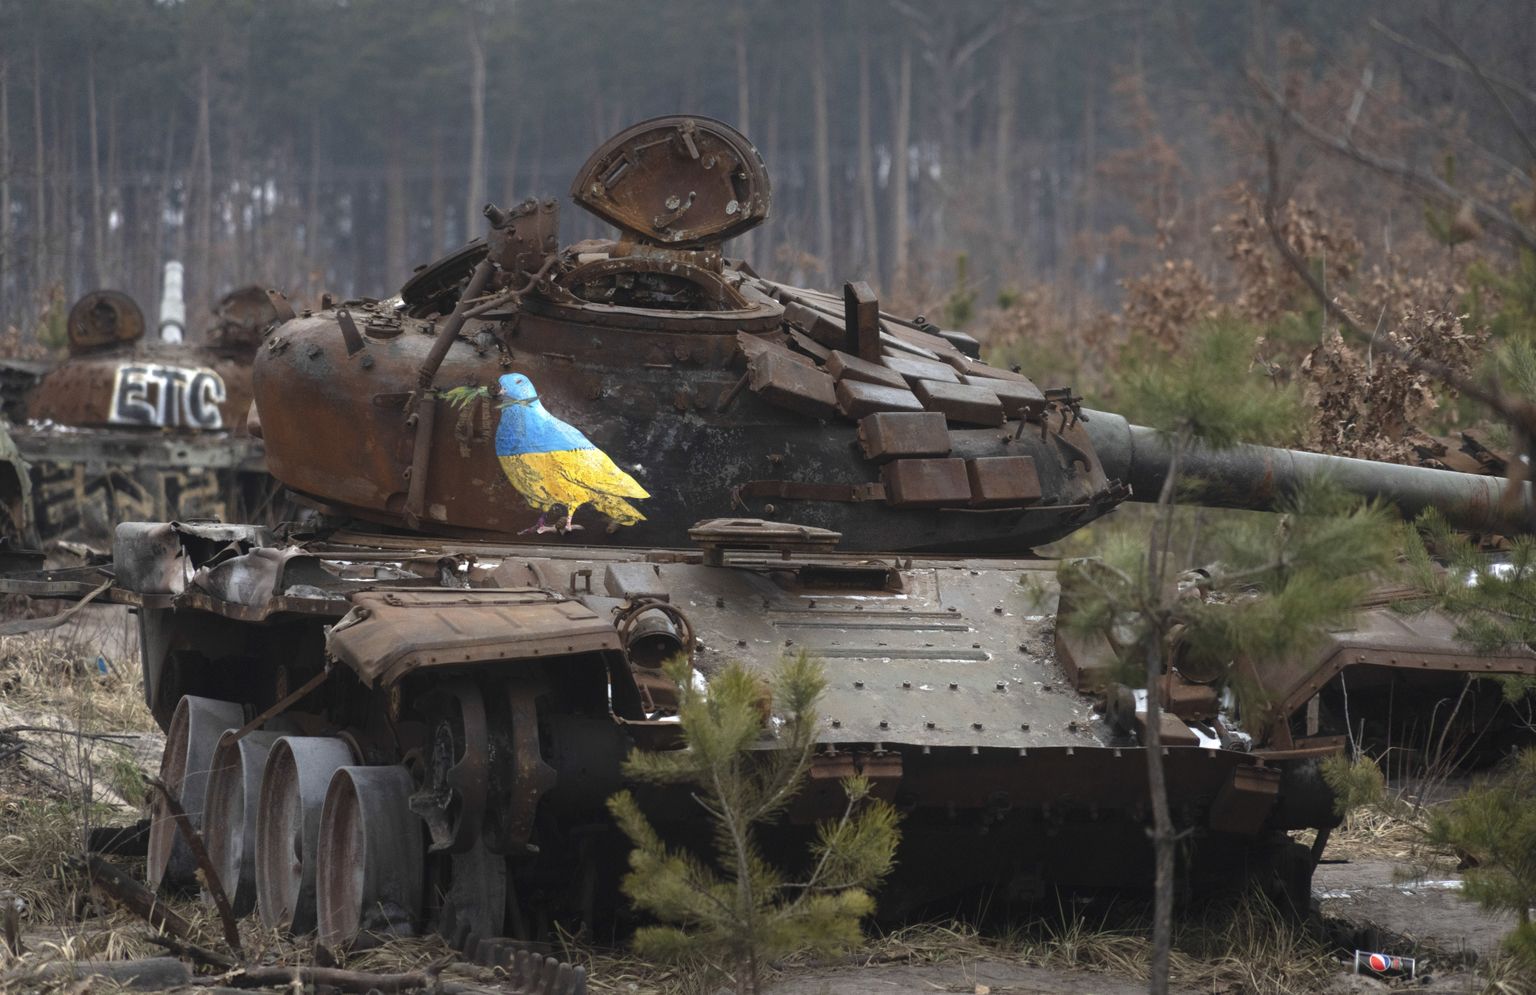 Ukraina armee hävitatud Vene tank Põhja-Ukrainas Dimitrõvka küla juures. Ukraina tuntud tänavakunstnik TvBoy joonistas tankile Ukraina lipu värvides rahutuvi. Foto on tehtud 30. jaanuaril 2023